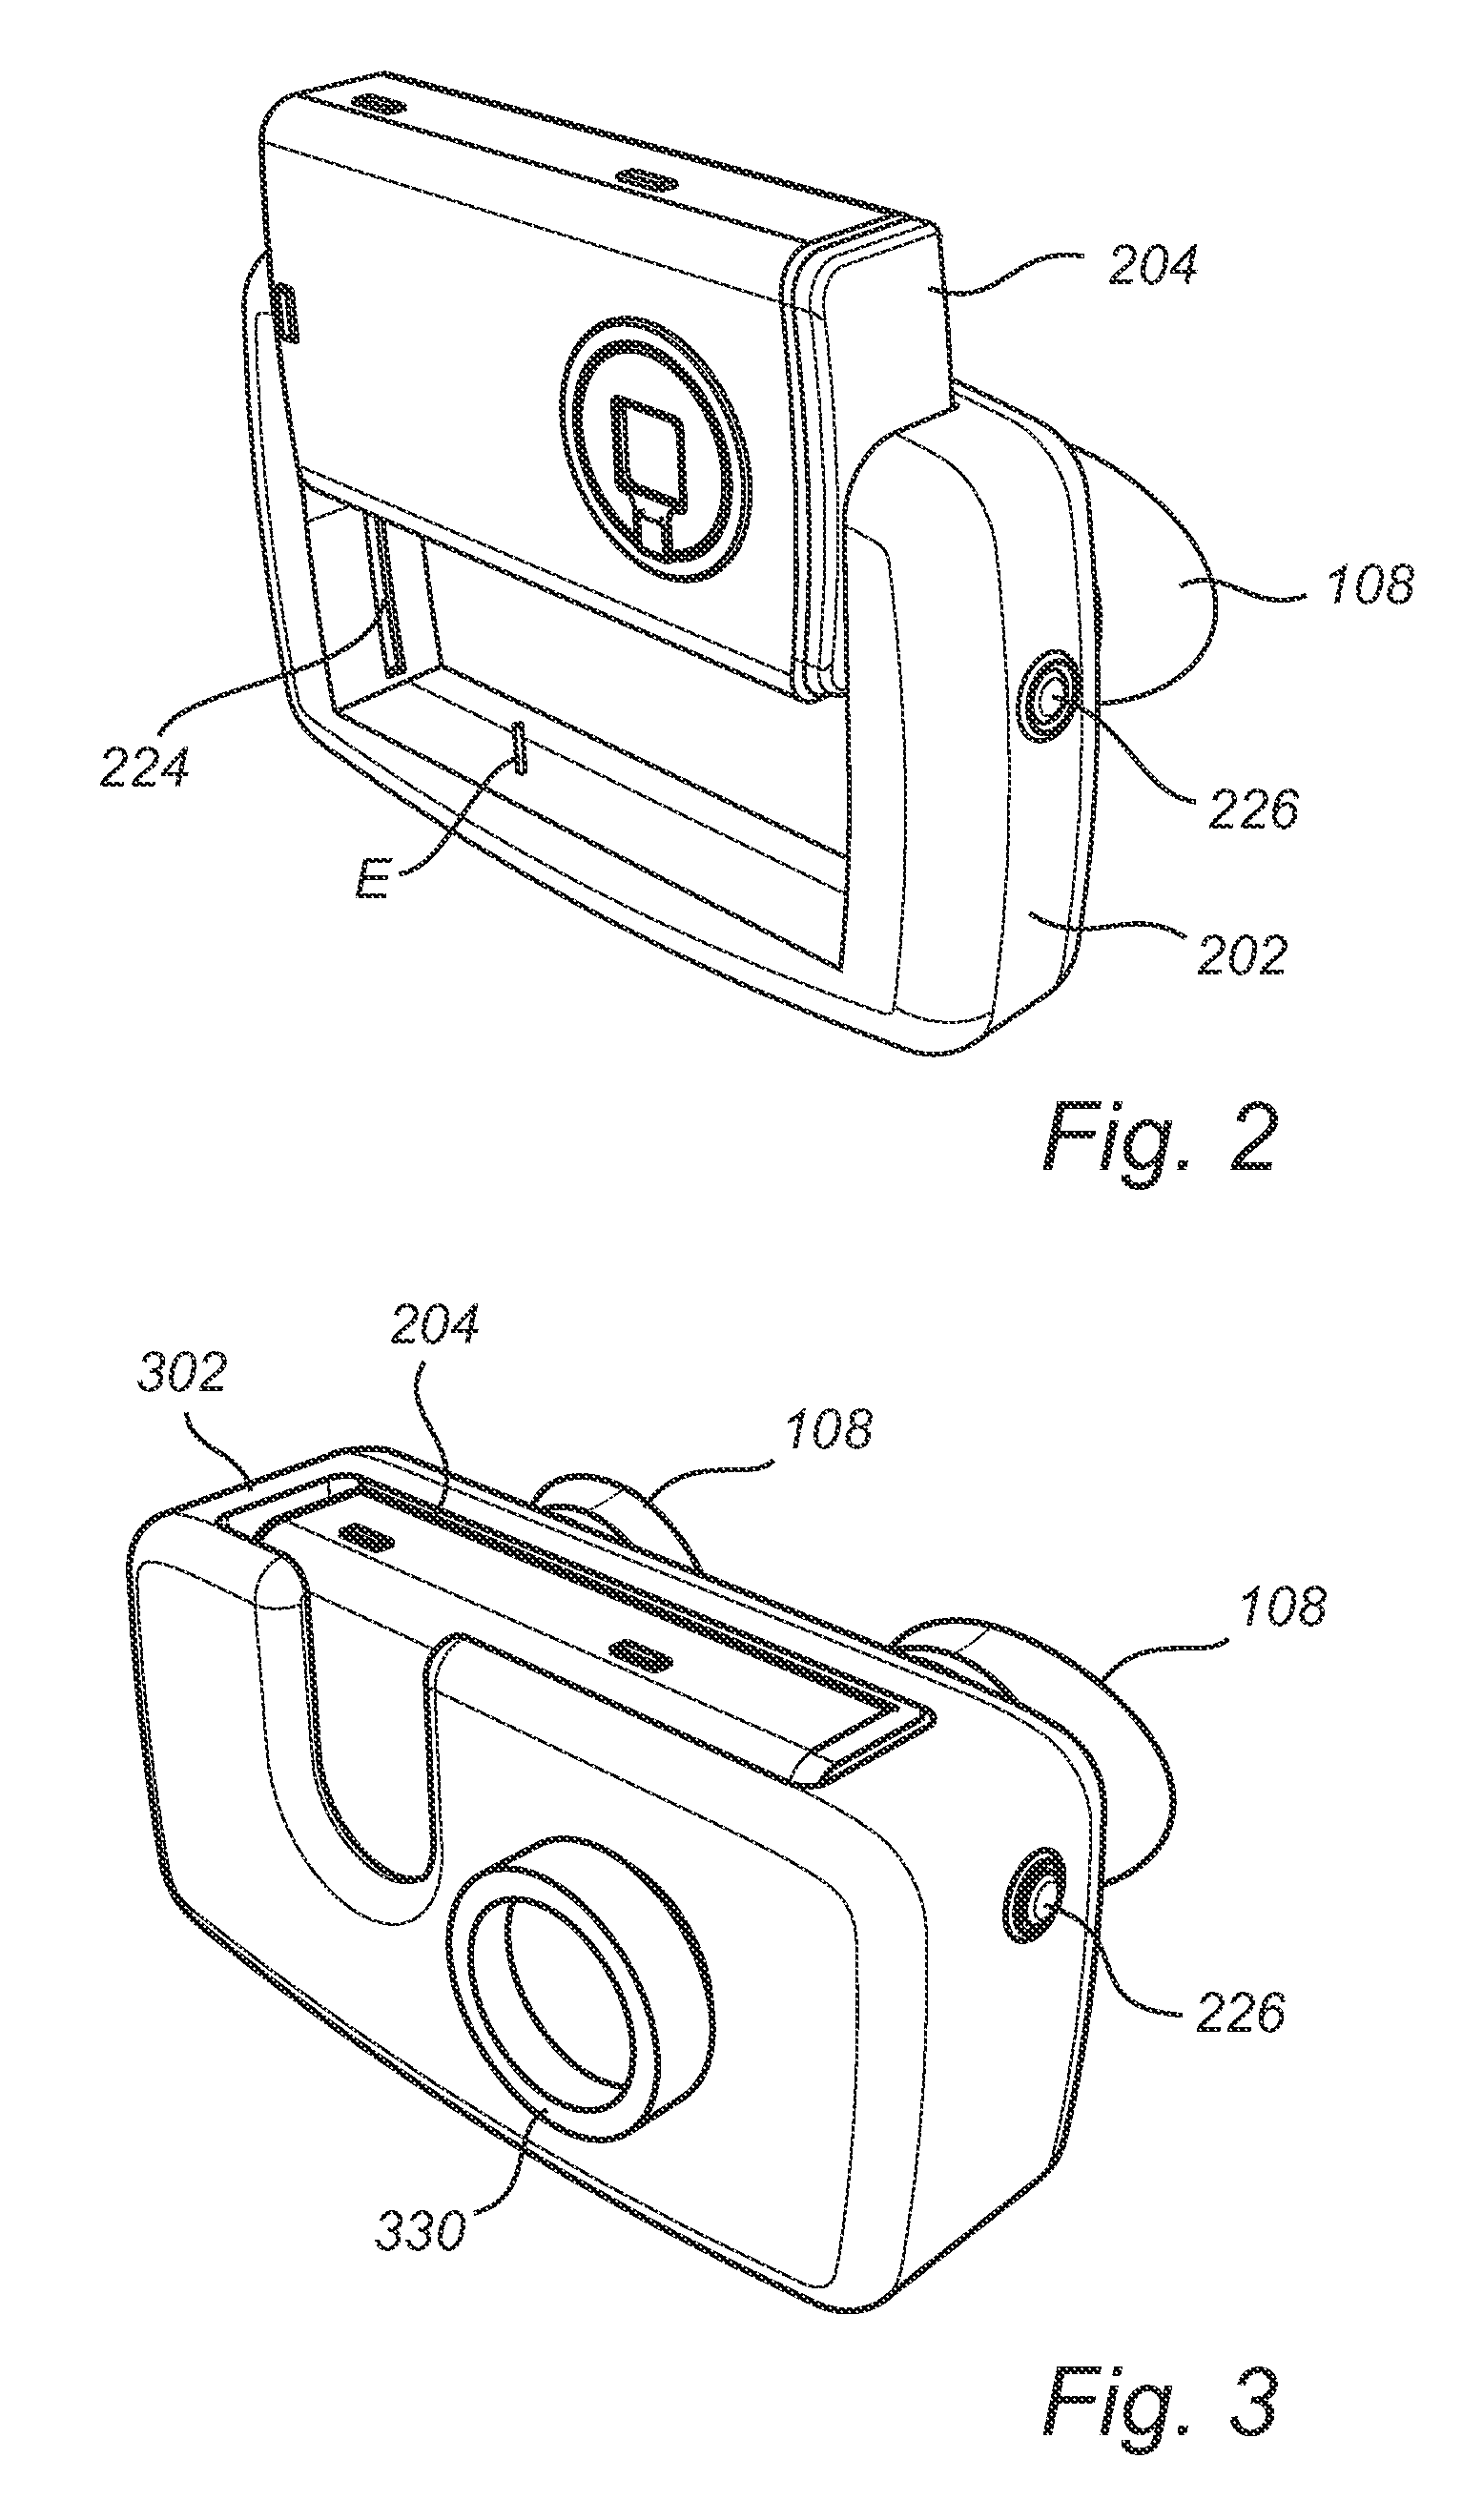 Binocular system with digital camera